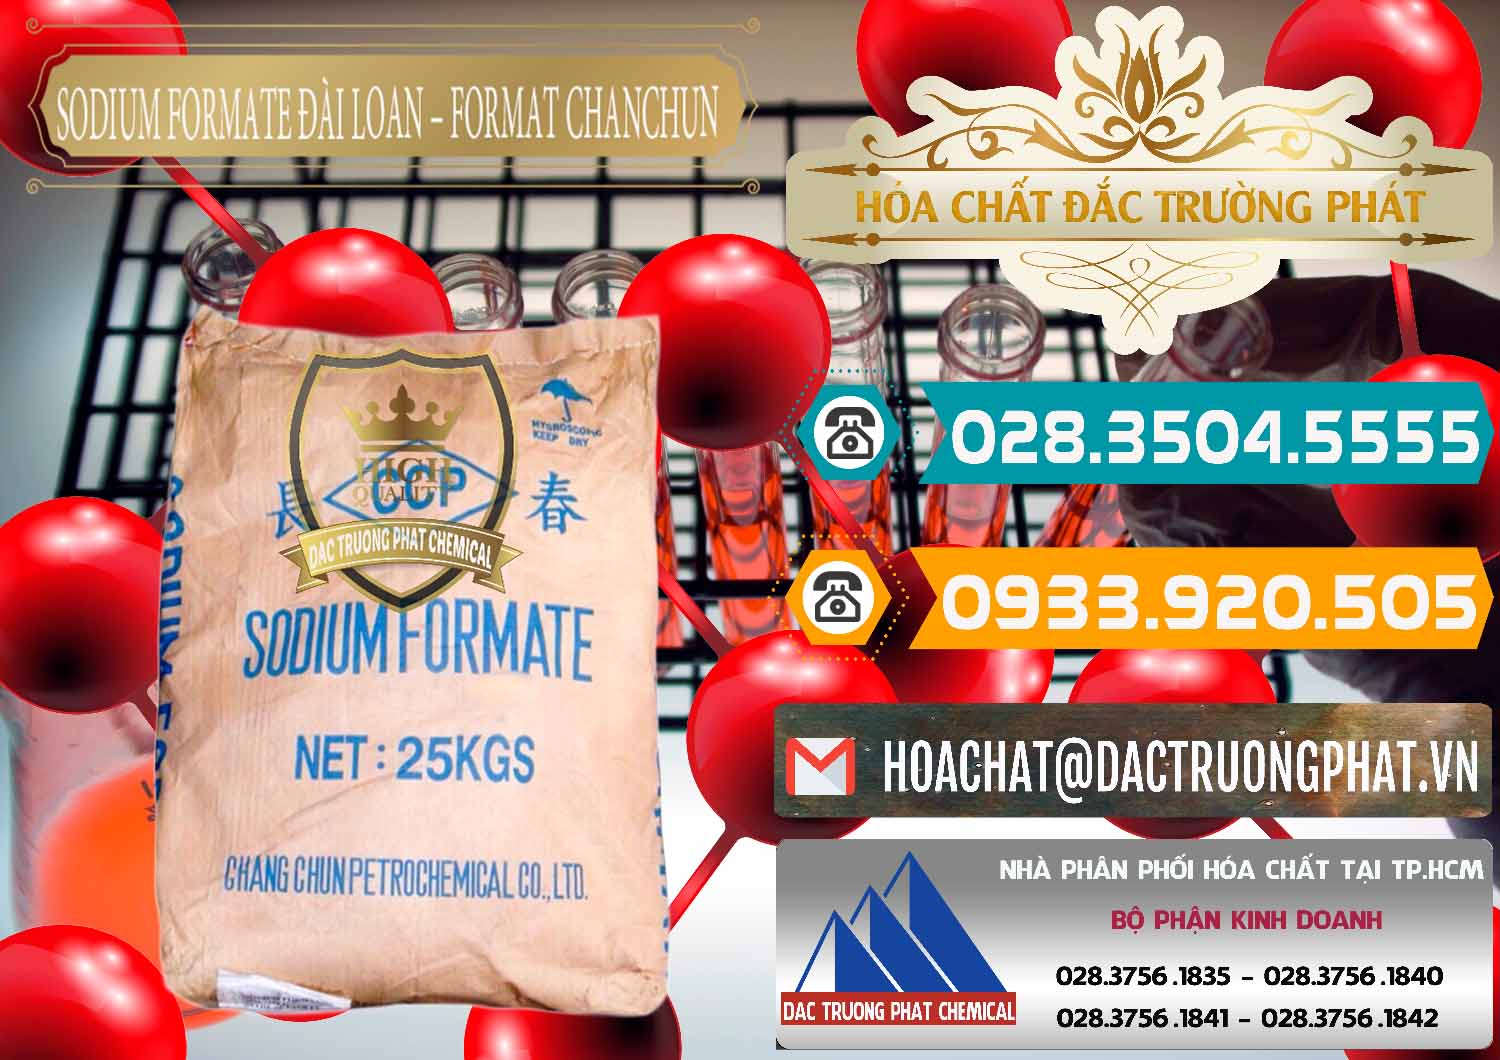 Chuyên phân phối - bán Sodium Formate - Natri Format Đài Loan Taiwan - 0141 - Công ty chuyên bán và cung cấp hóa chất tại TP.HCM - congtyhoachat.vn